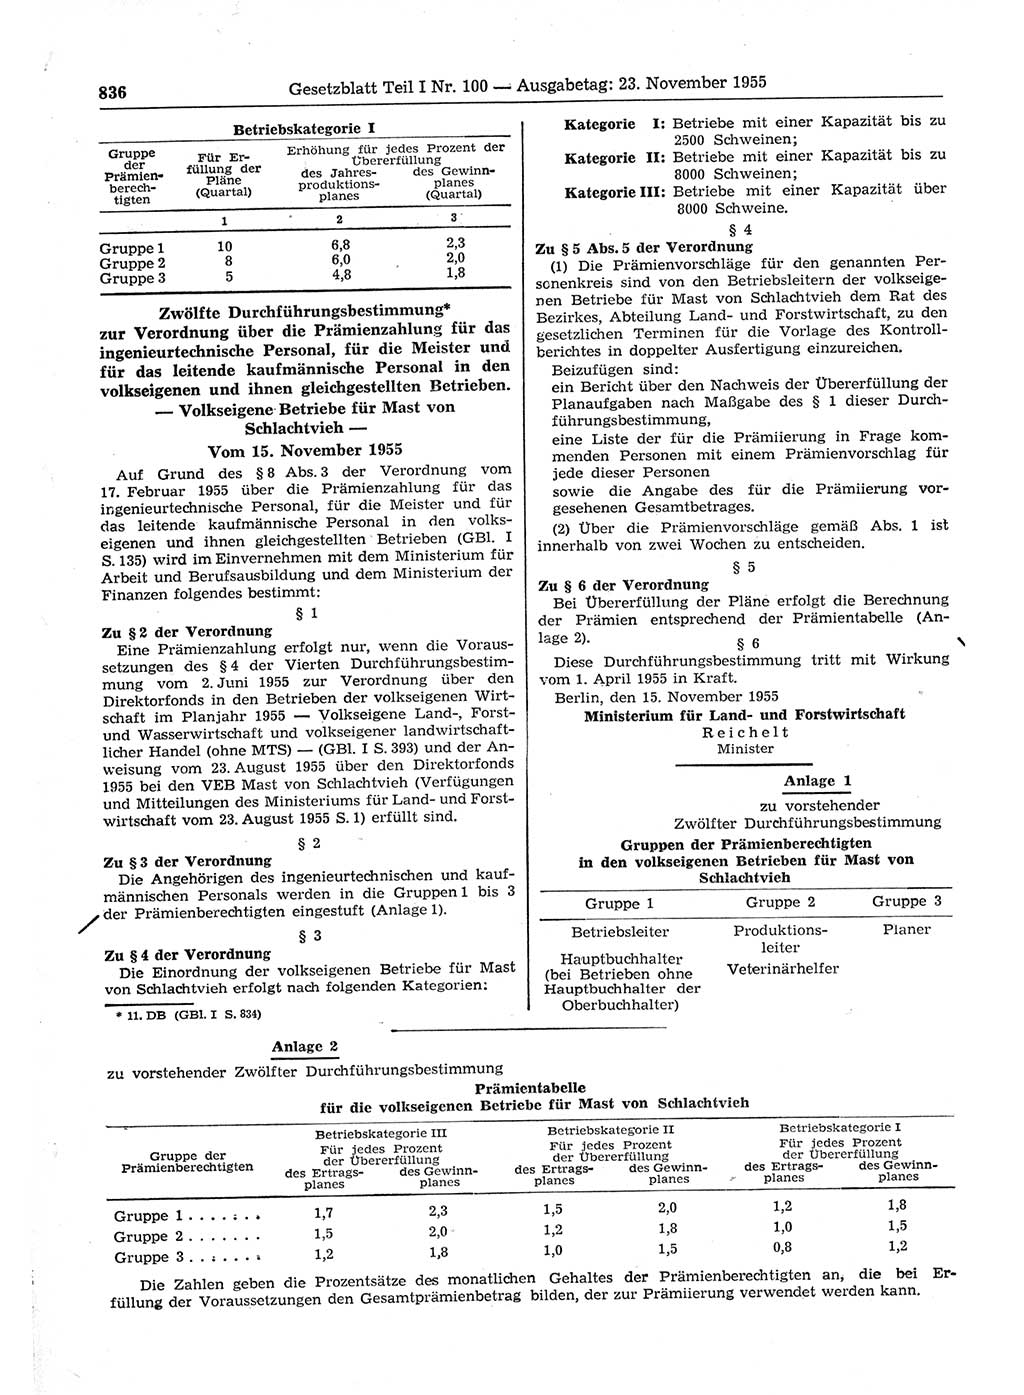 Gesetzblatt (GBl.) der Deutschen Demokratischen Republik (DDR) Teil Ⅰ 1955, Seite 836 (GBl. DDR Ⅰ 1955, S. 836)